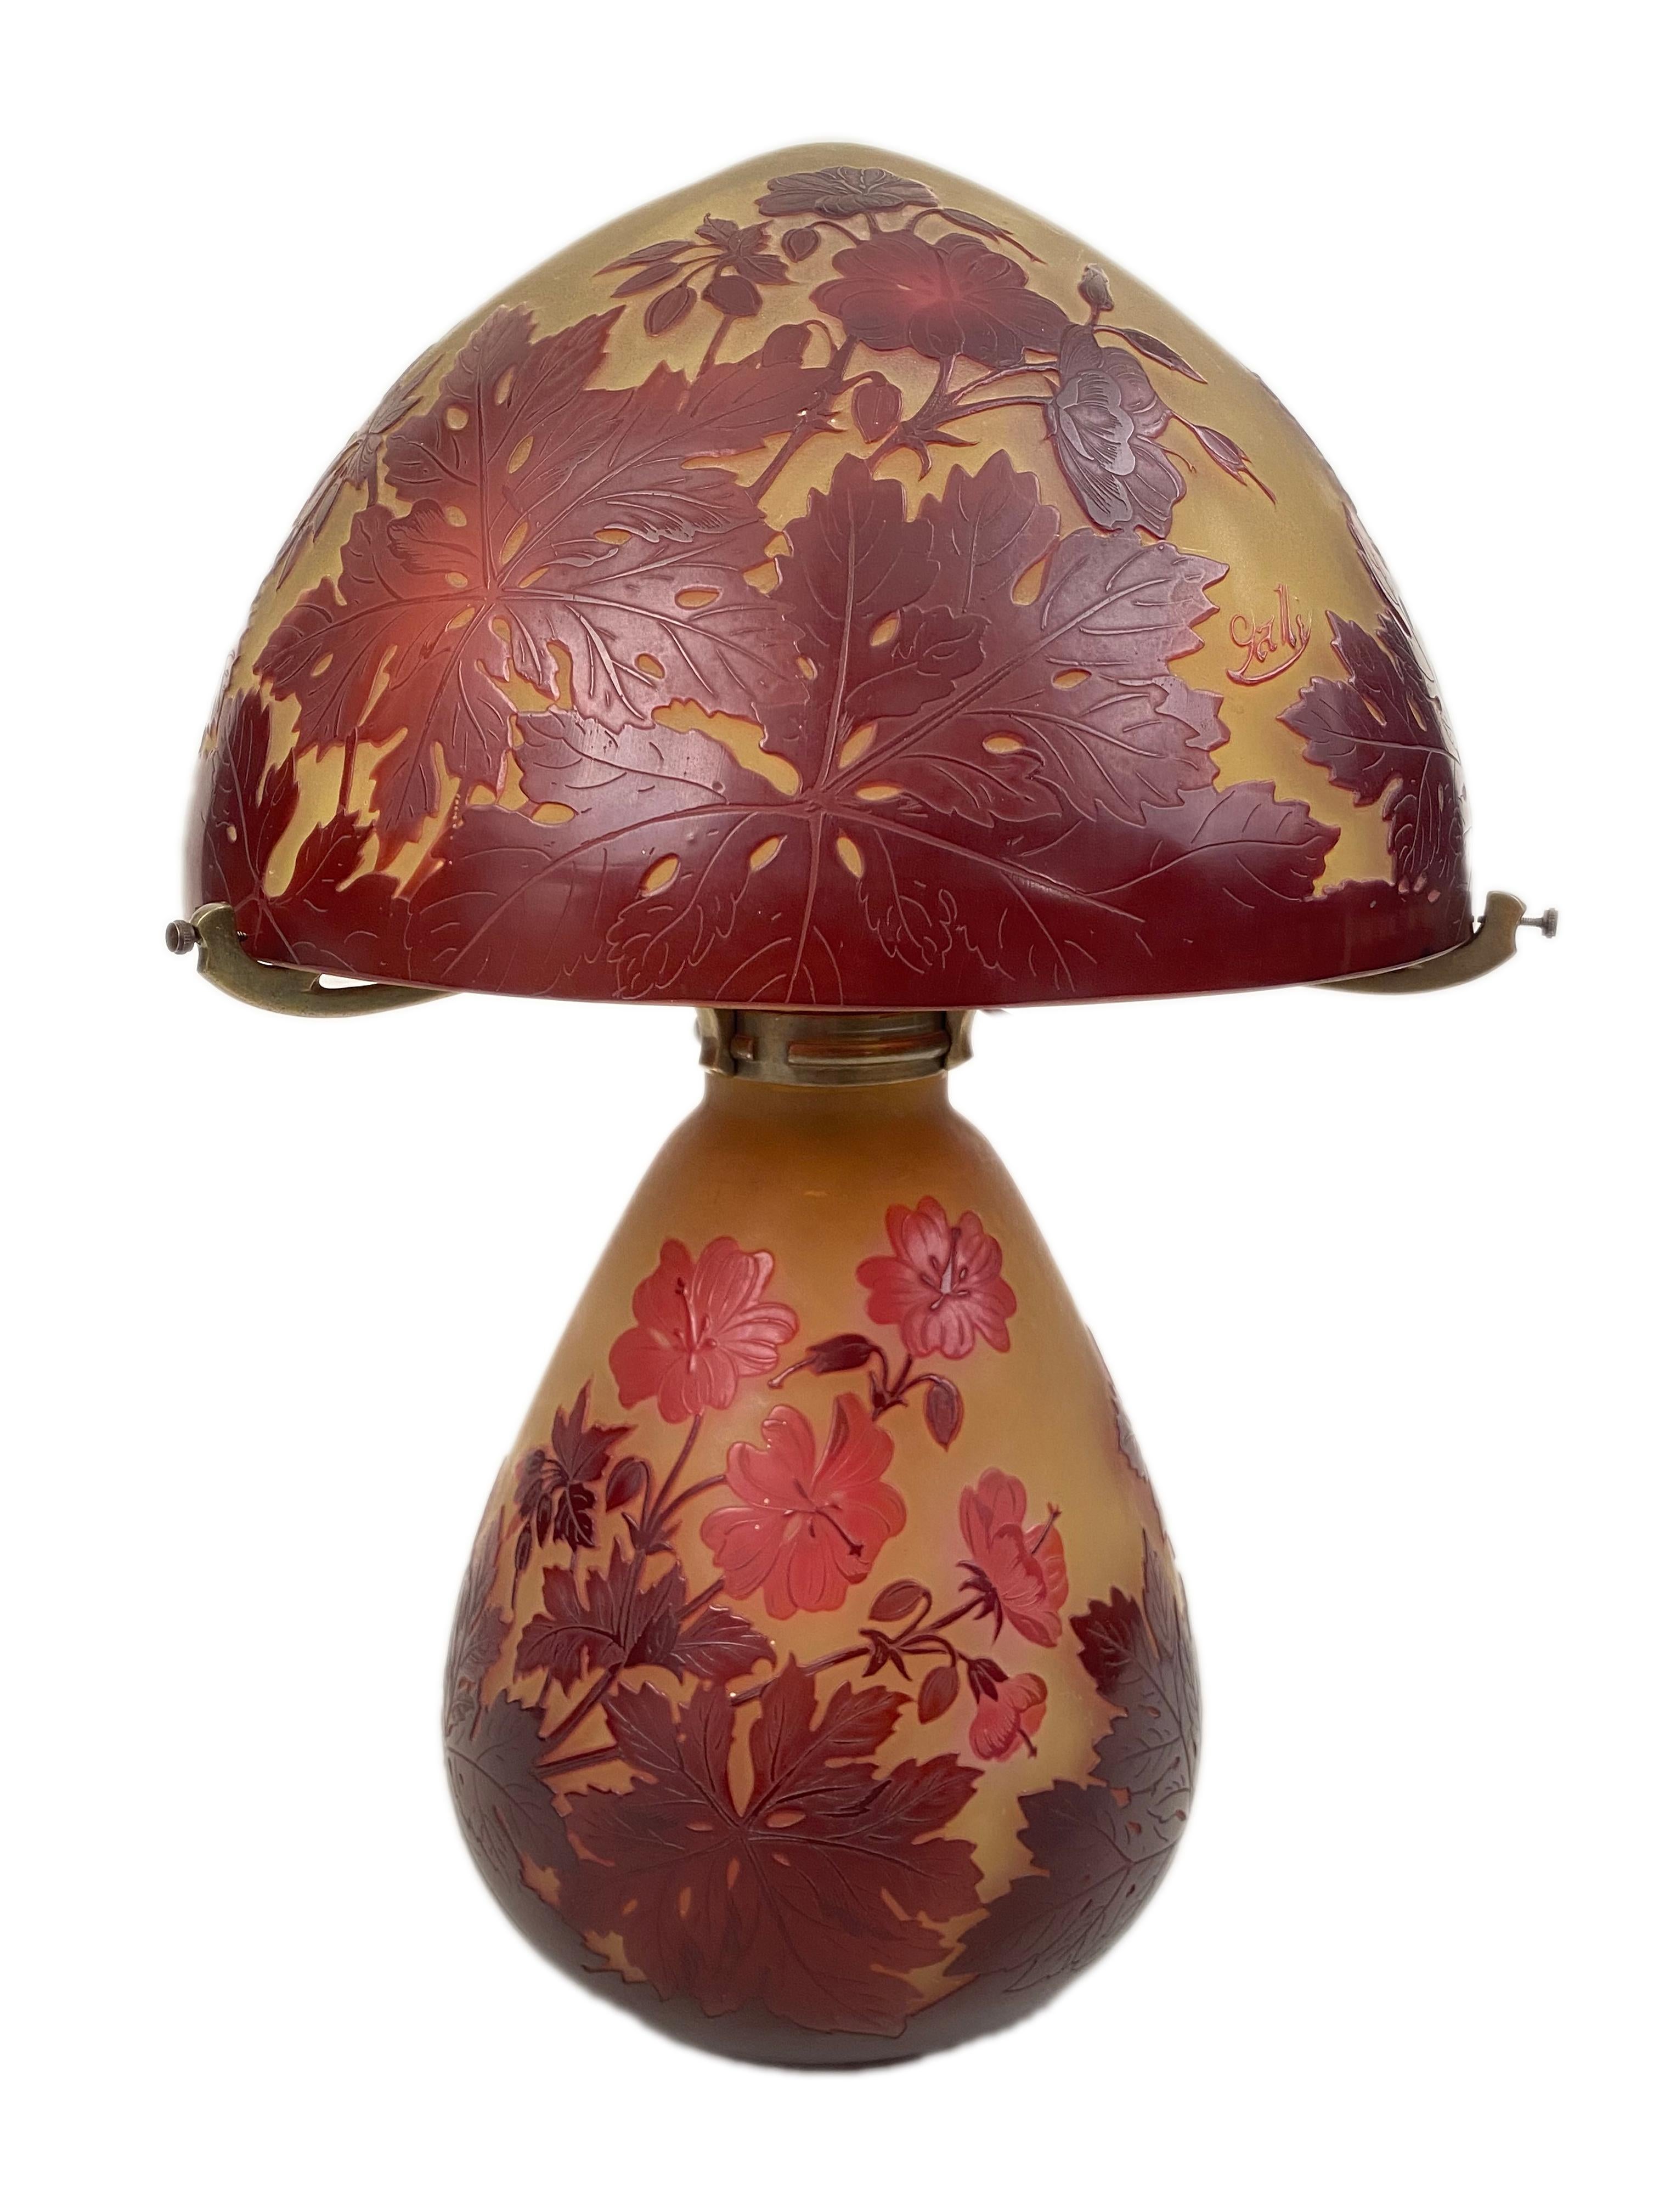 Lampe de table Art Nouveau du début du 20e siècle en verre camée et bronze par Emile Gallé. La base et l'abat-jour sont décorés de fleurs, de feuilles et de tiges rouge cramoisi sur un fond jaune et blanc. La base et l'abat-jour sont tous deux